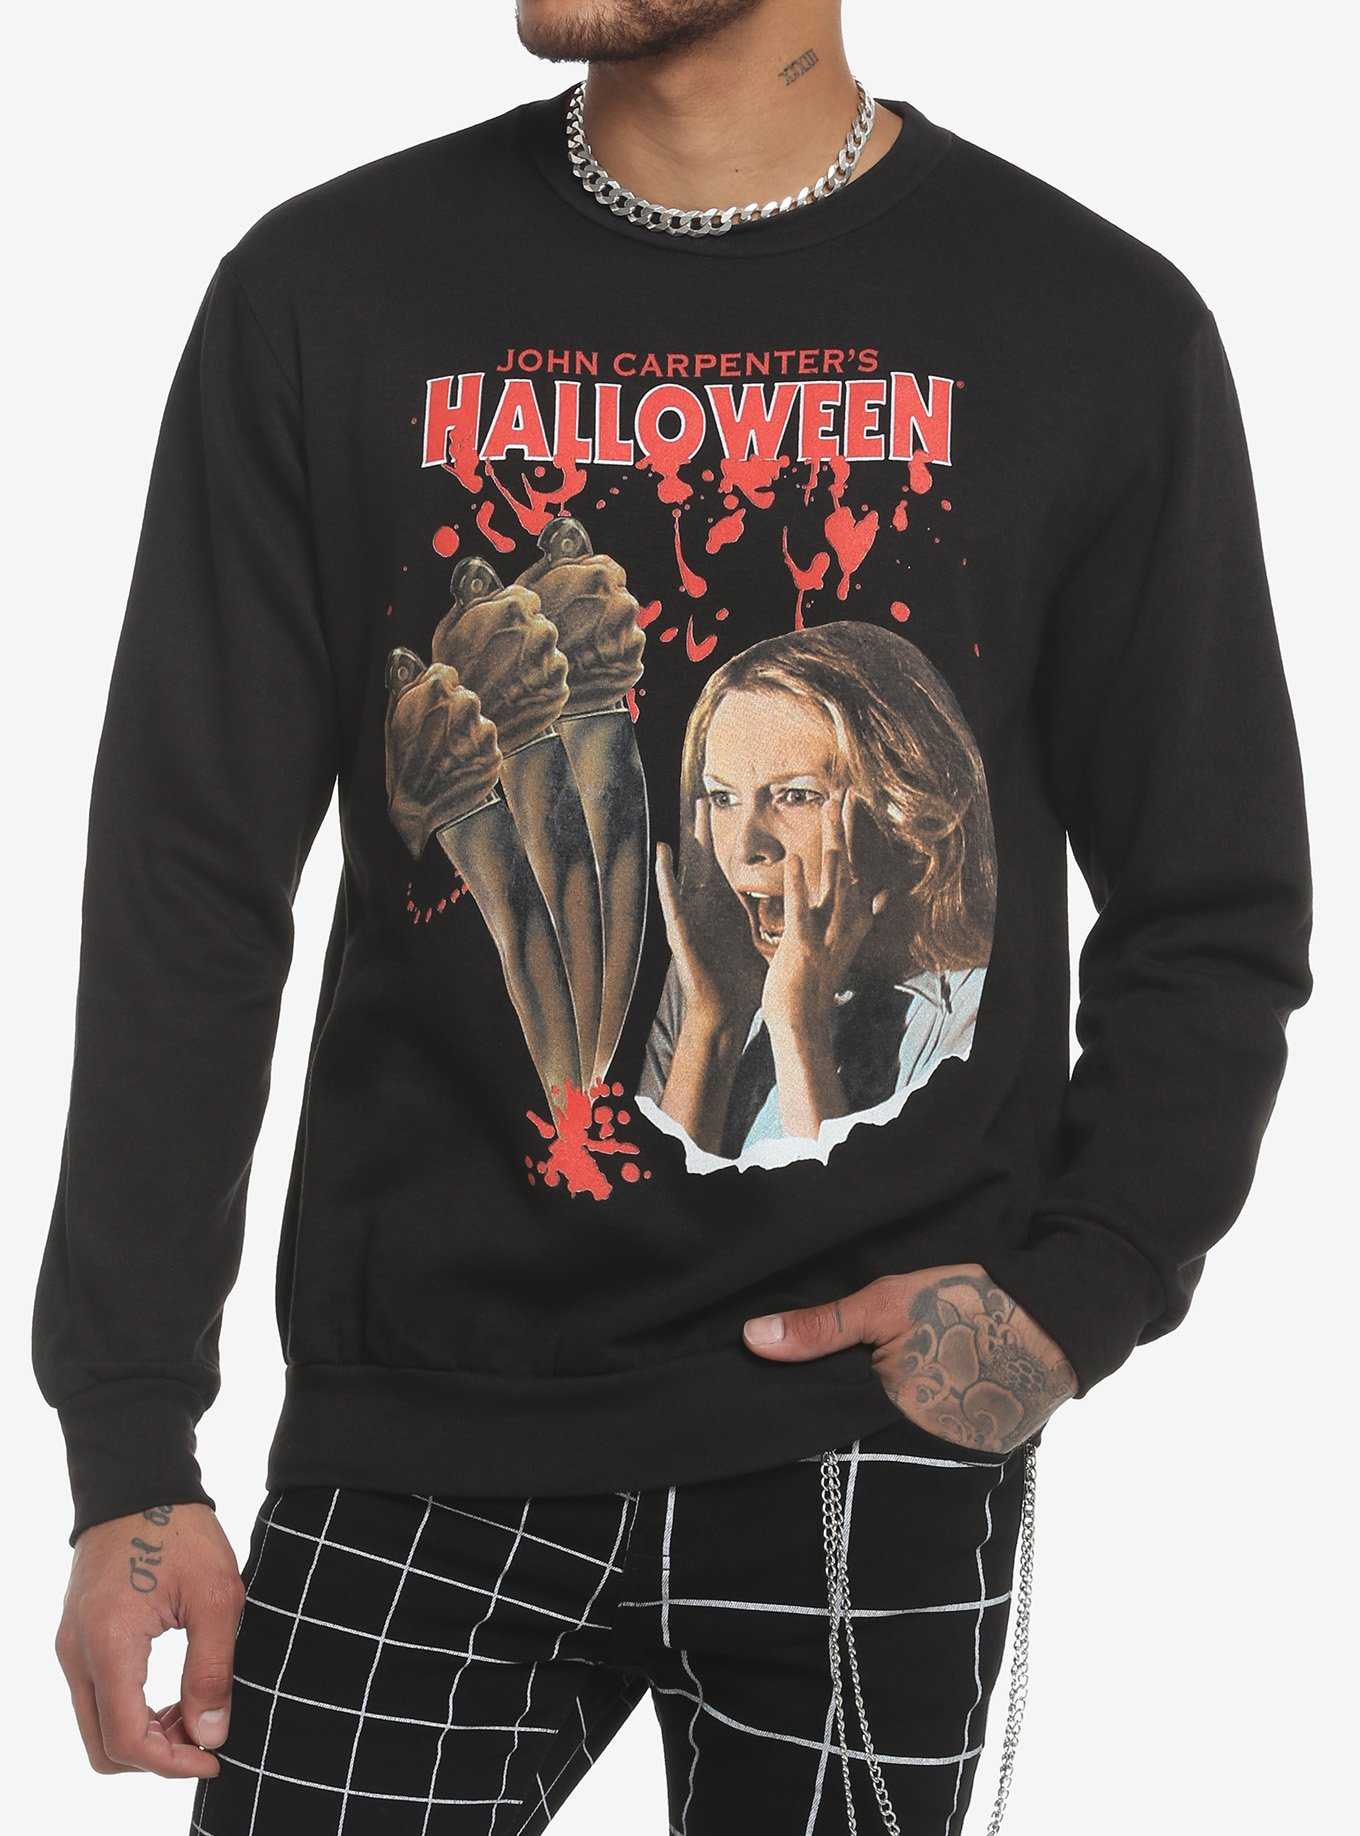 Halloween Laurie Strode Screaming Crewneck Sweatshirt, , hi-res